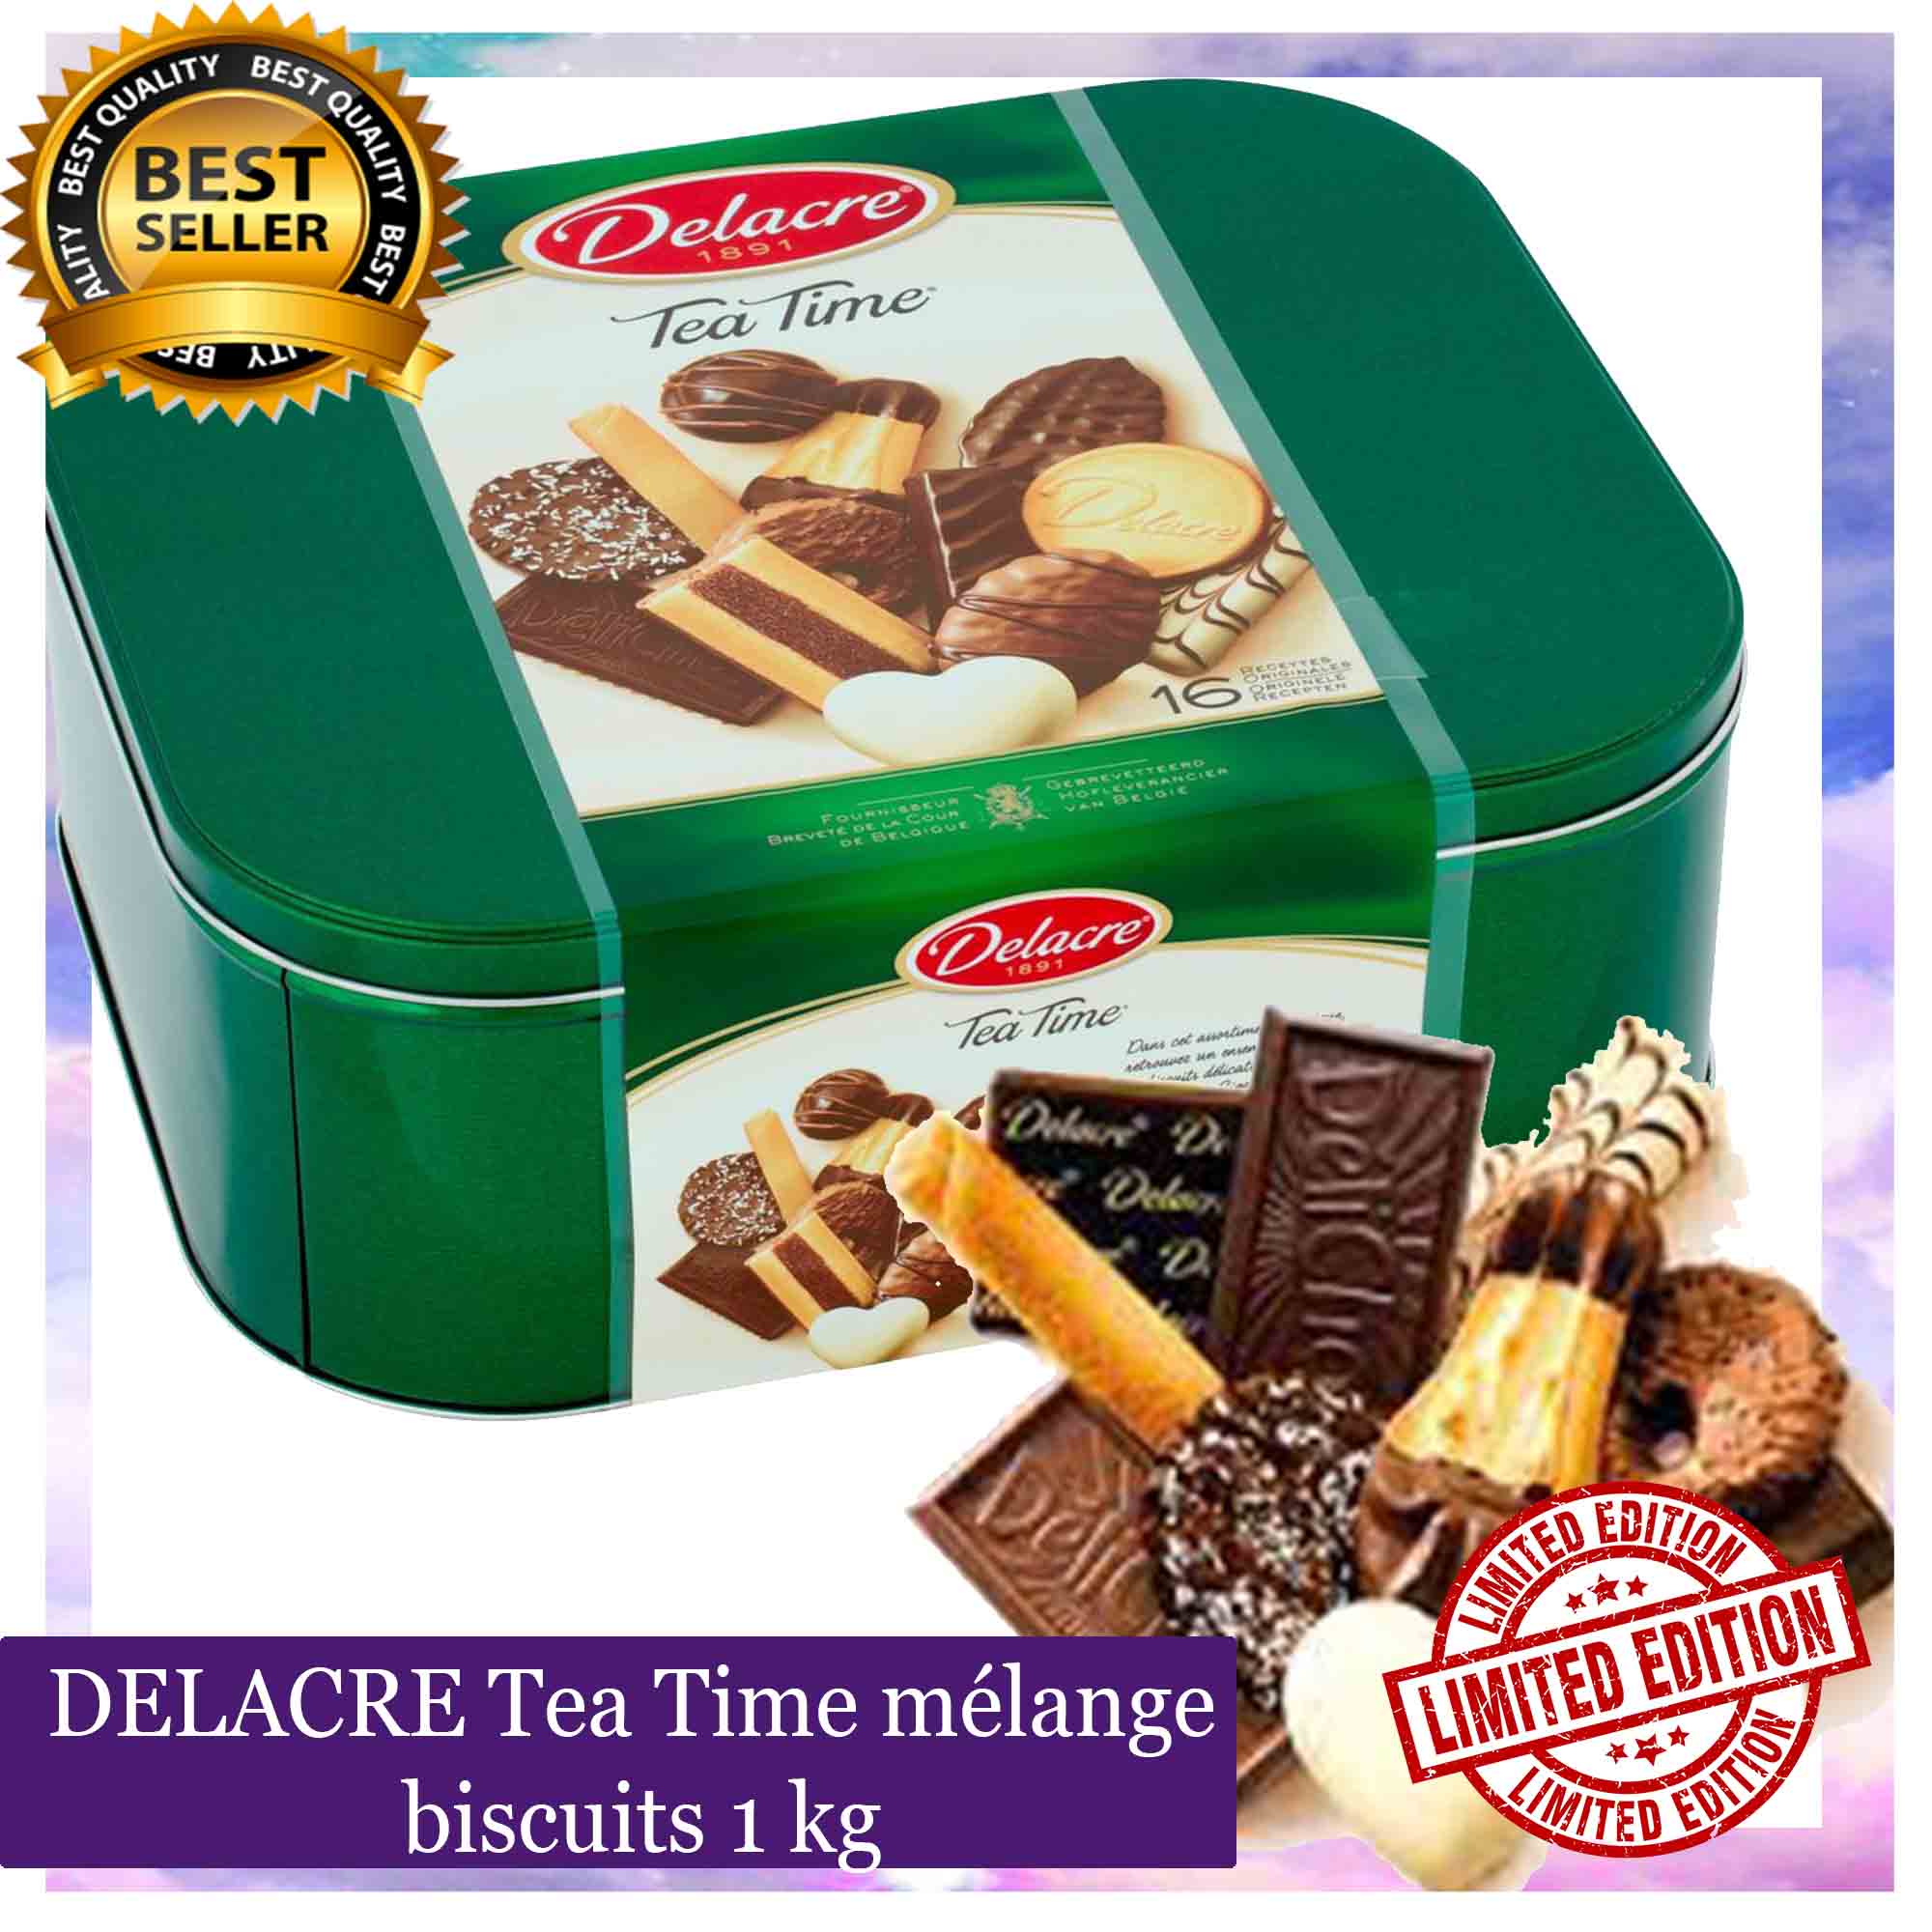 DELACRE Tea Time mélange biscuits 1 kg from Paris Premium Chocolates